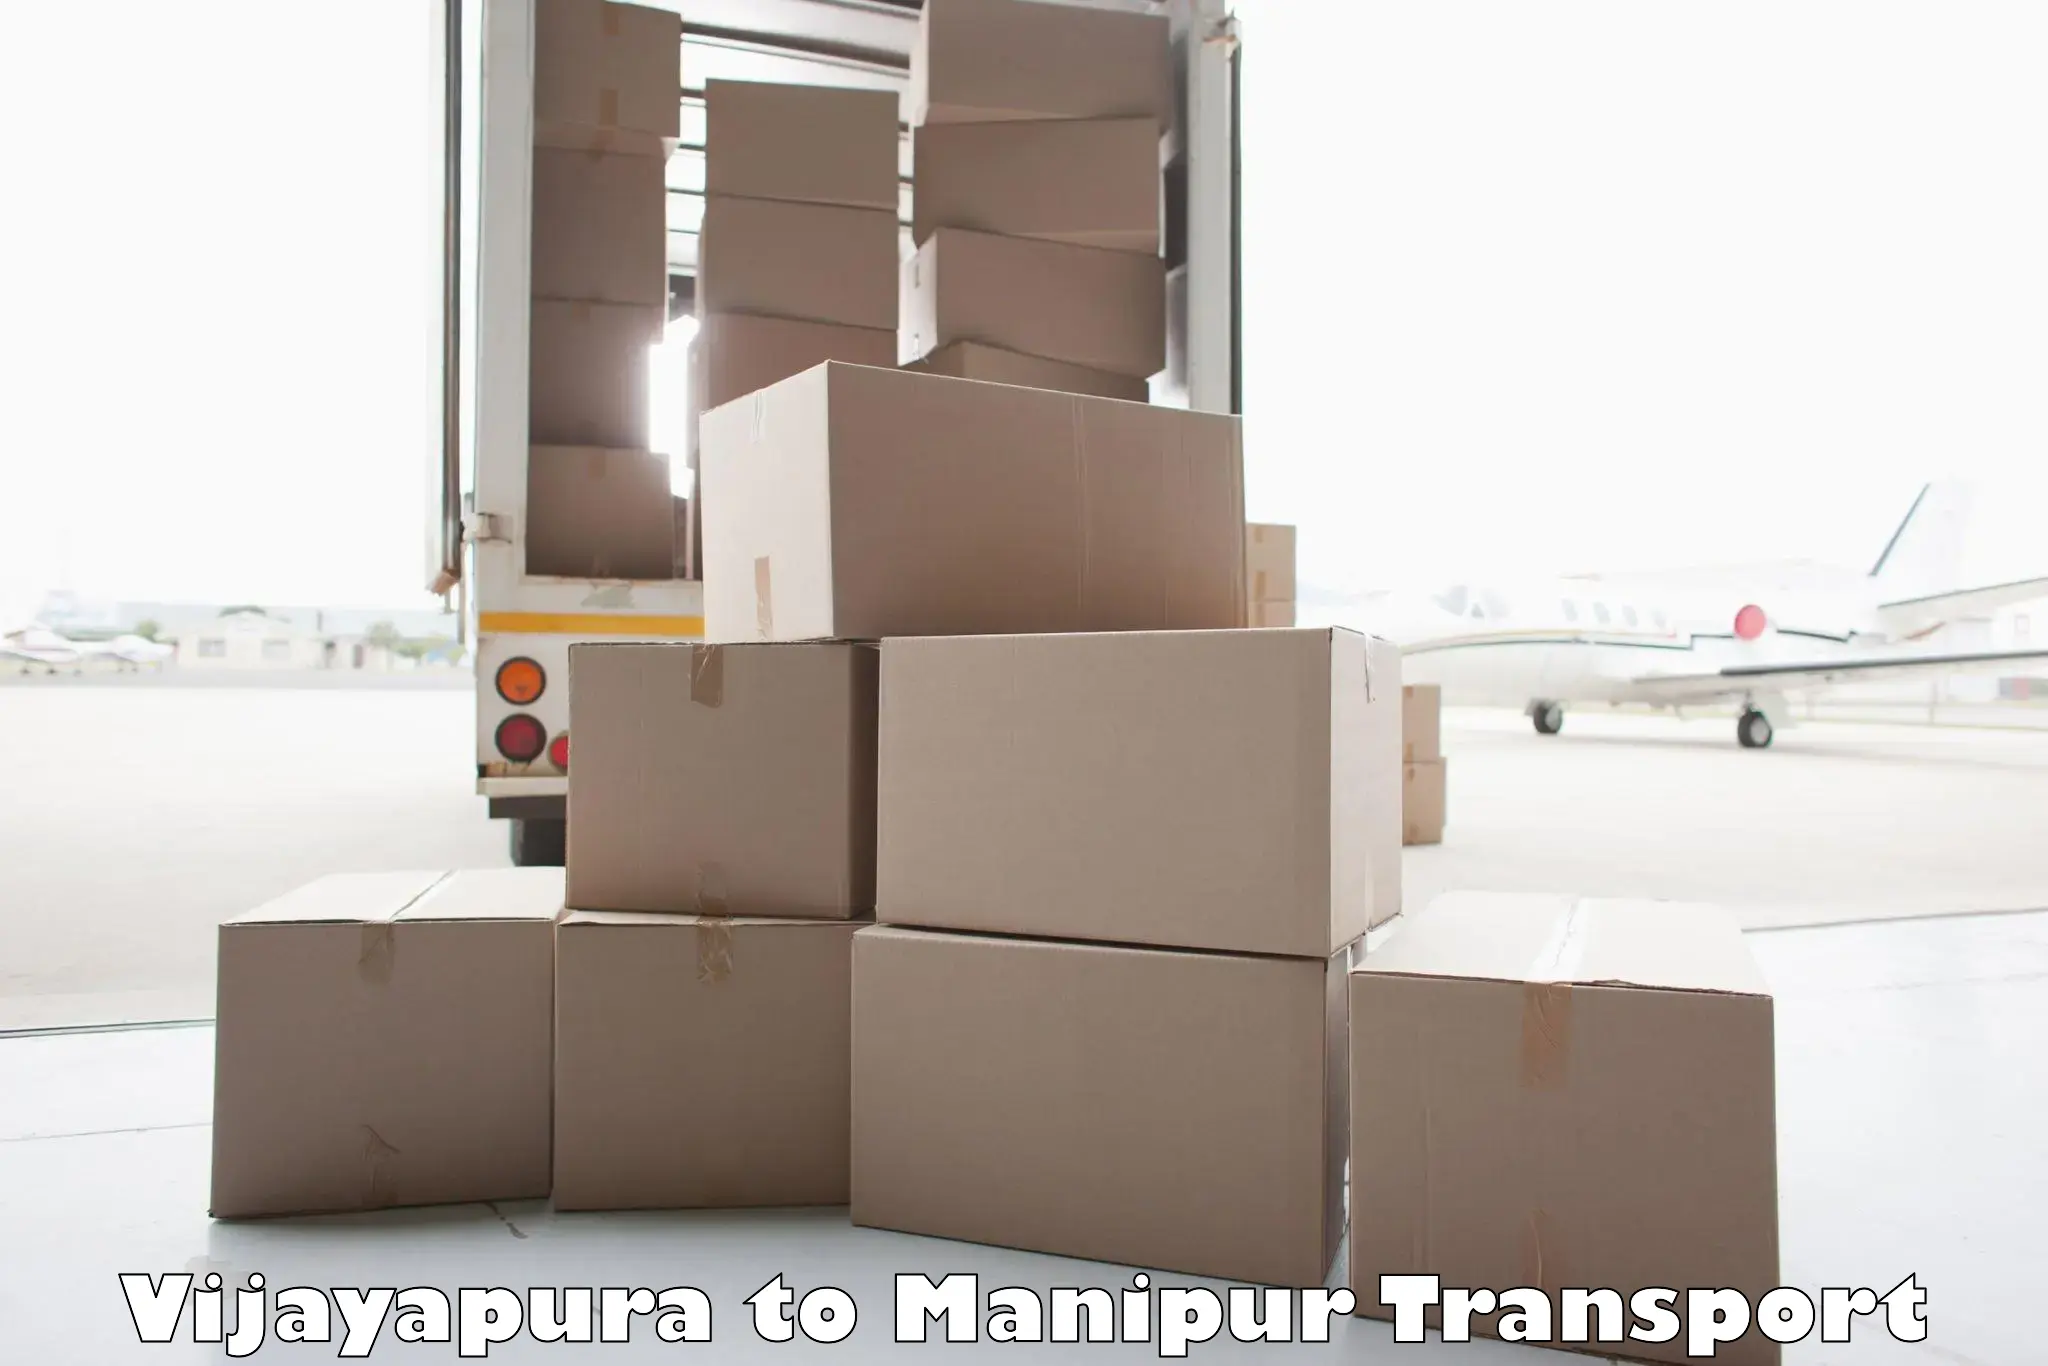 Commercial transport service Vijayapura to Manipur